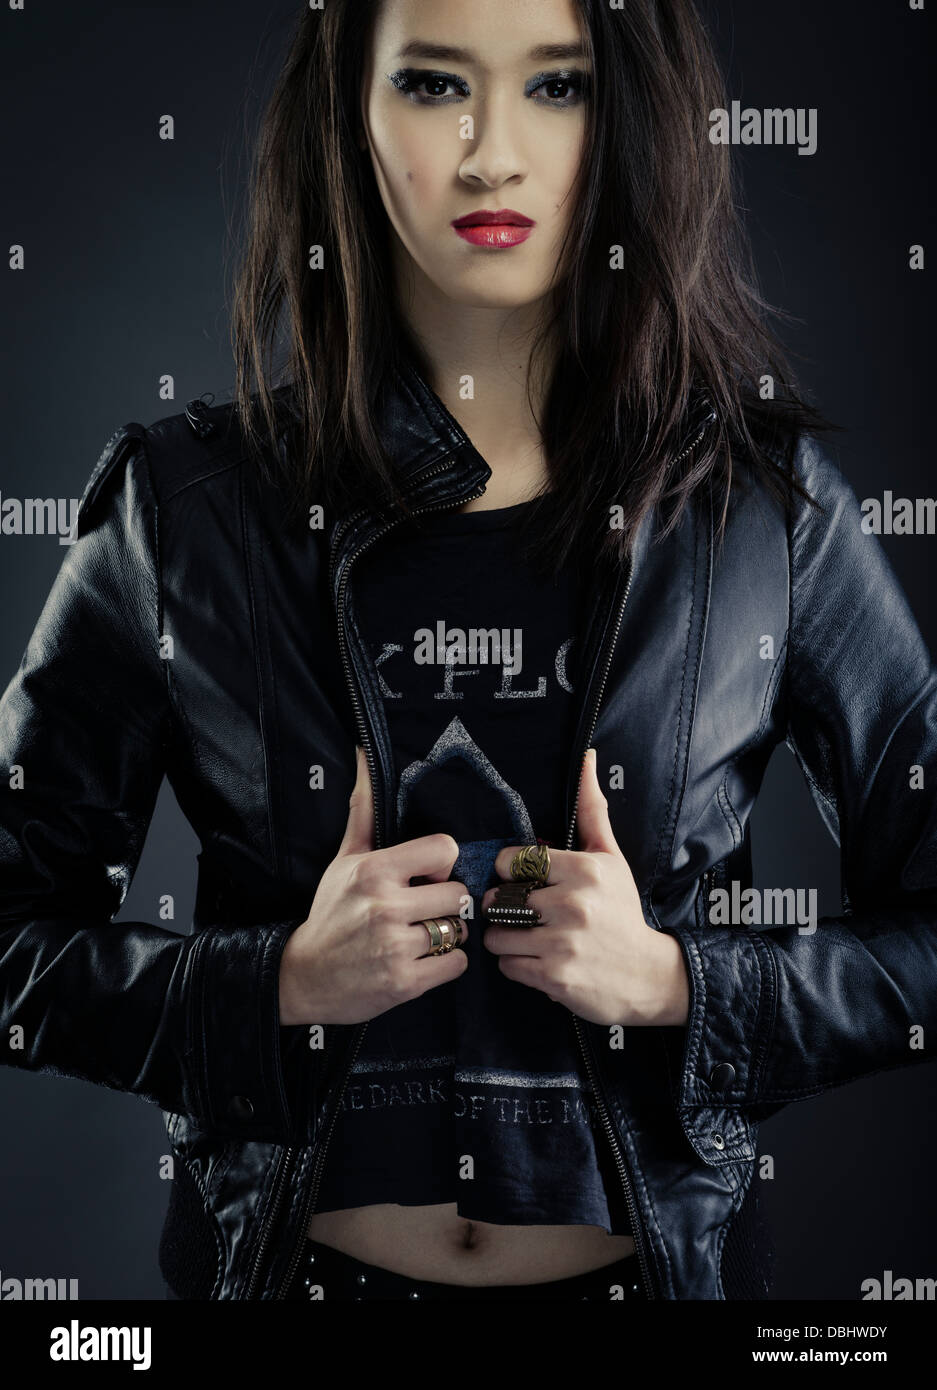 Belle asiatique femme aux longs cheveux noirs heavy metal rocker / biker portant des t-shrit floyd rose et noir veste en cuir Banque D'Images